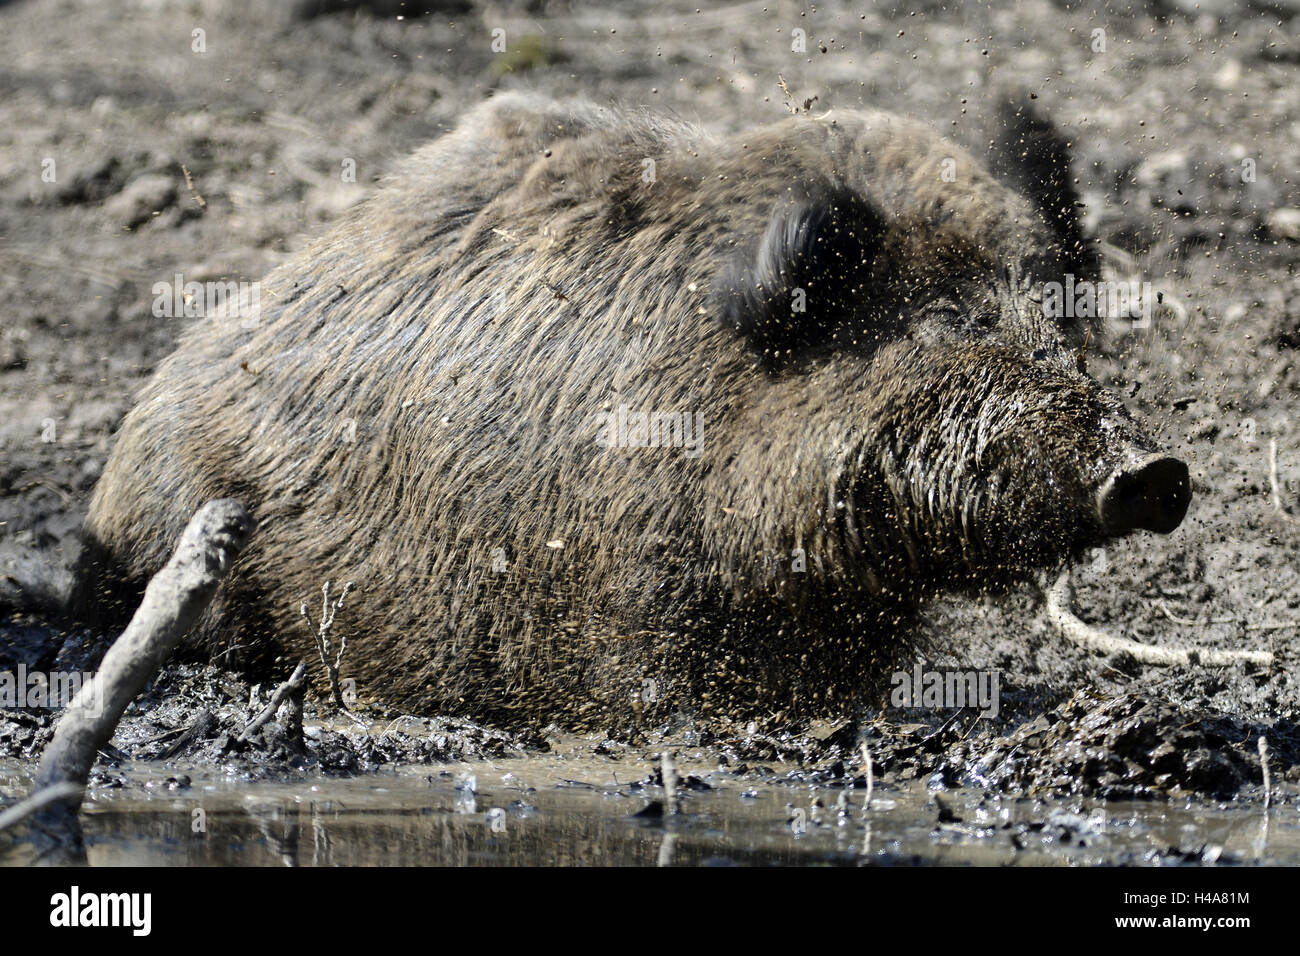 Wild boar, bathe, mush, Stock Photo